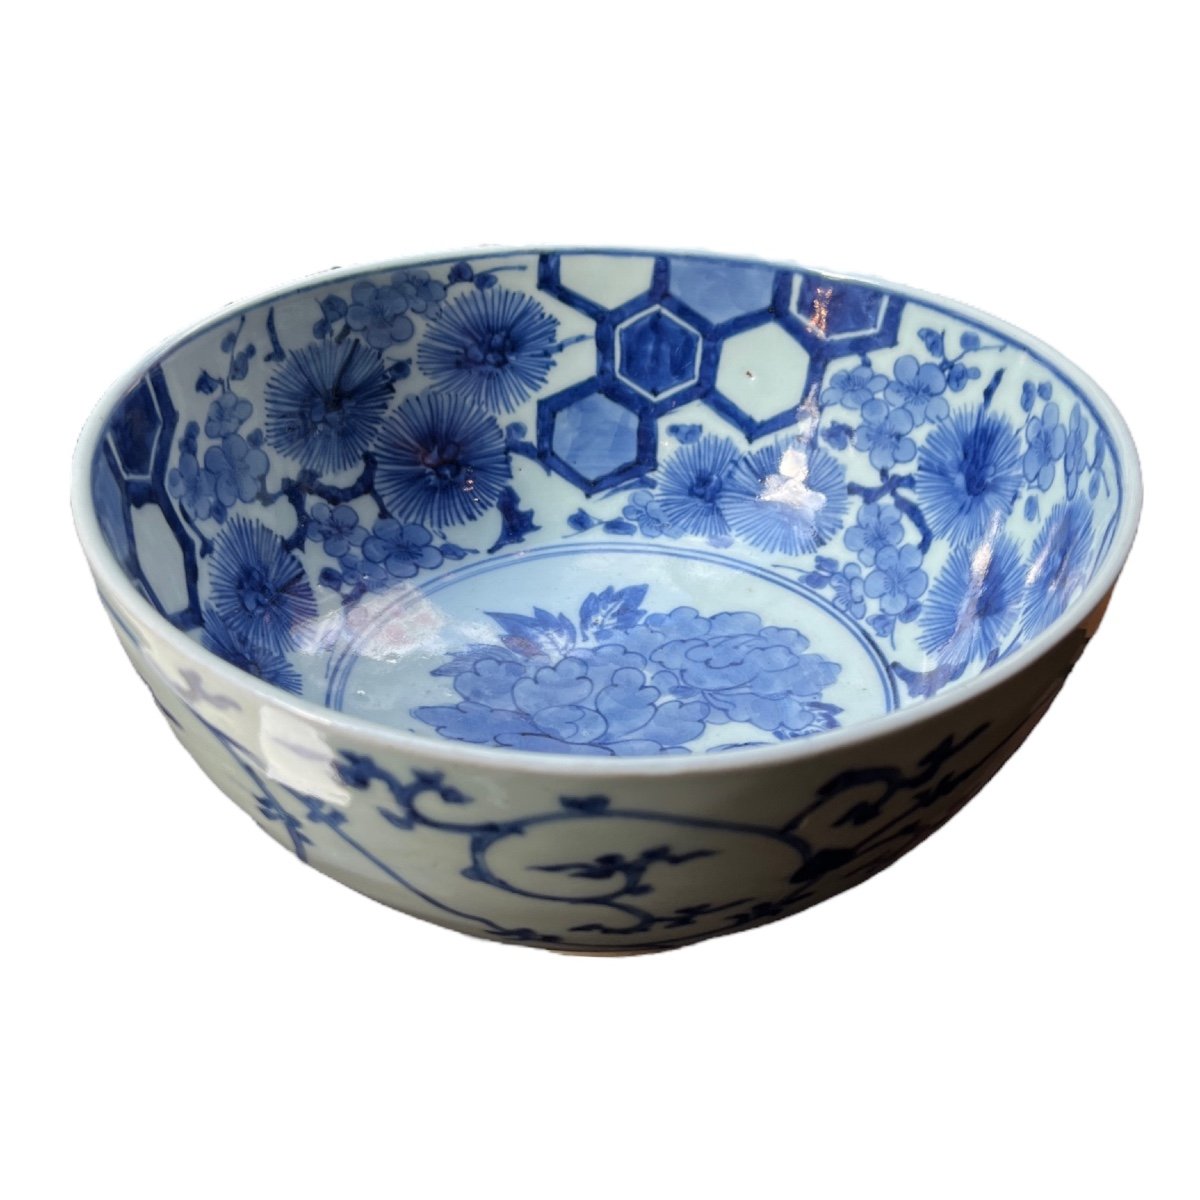 Grand Bol En Porcelaine Japonaise Bleu Blanc, Japon, Arita, Edo Period, Fin Du 18ème Siècle.